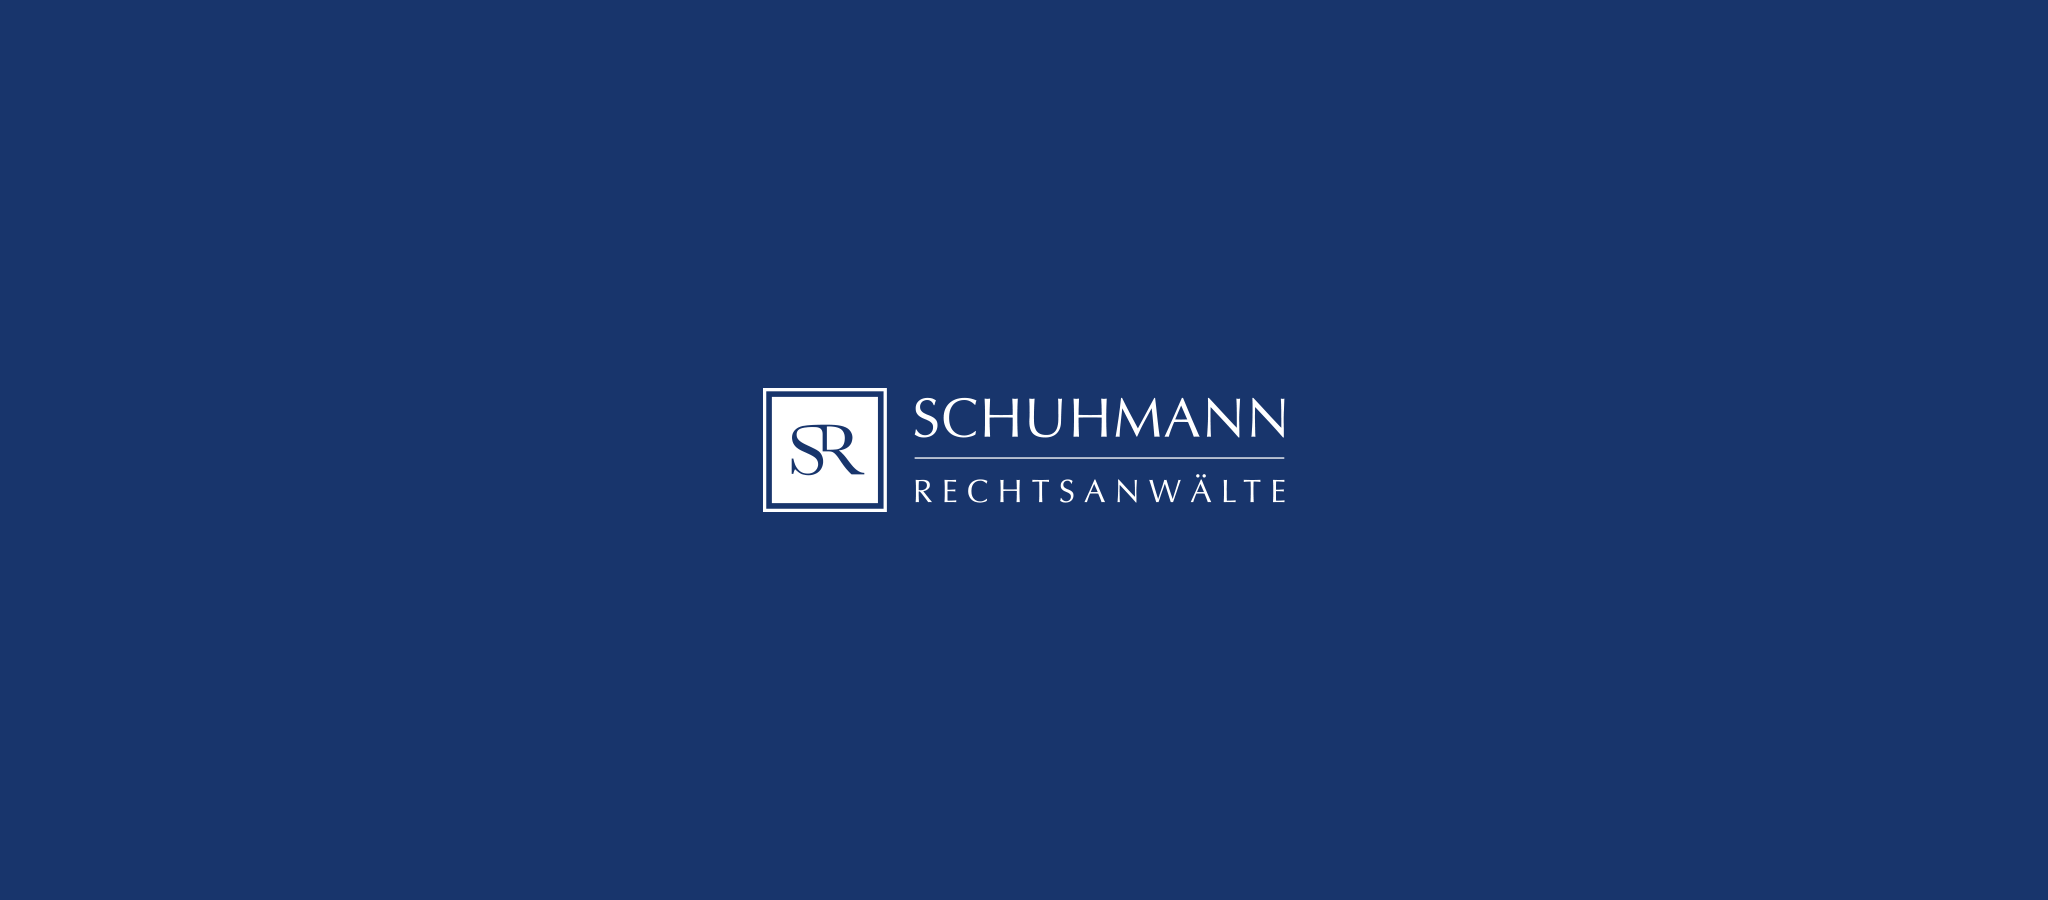 SCHUHMANN RECHTSANWÄLTE in München, Berlin und Würzburg